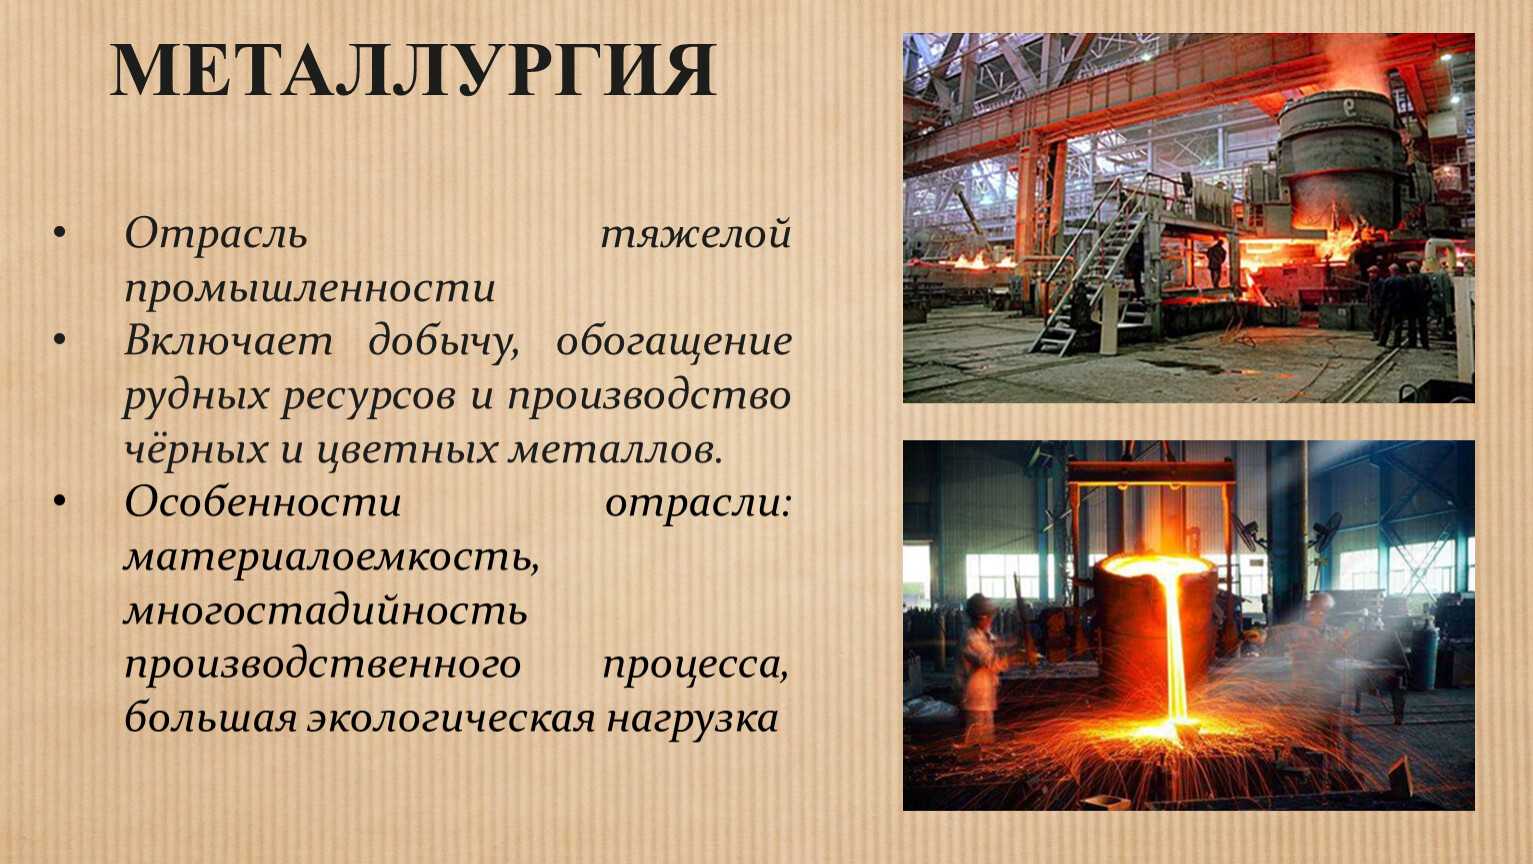 Отрасль промышленности в 18 веке. Металлургия. Металлургия промышленность. Отрасли металлургии. Металлургия отрасль промышленности.